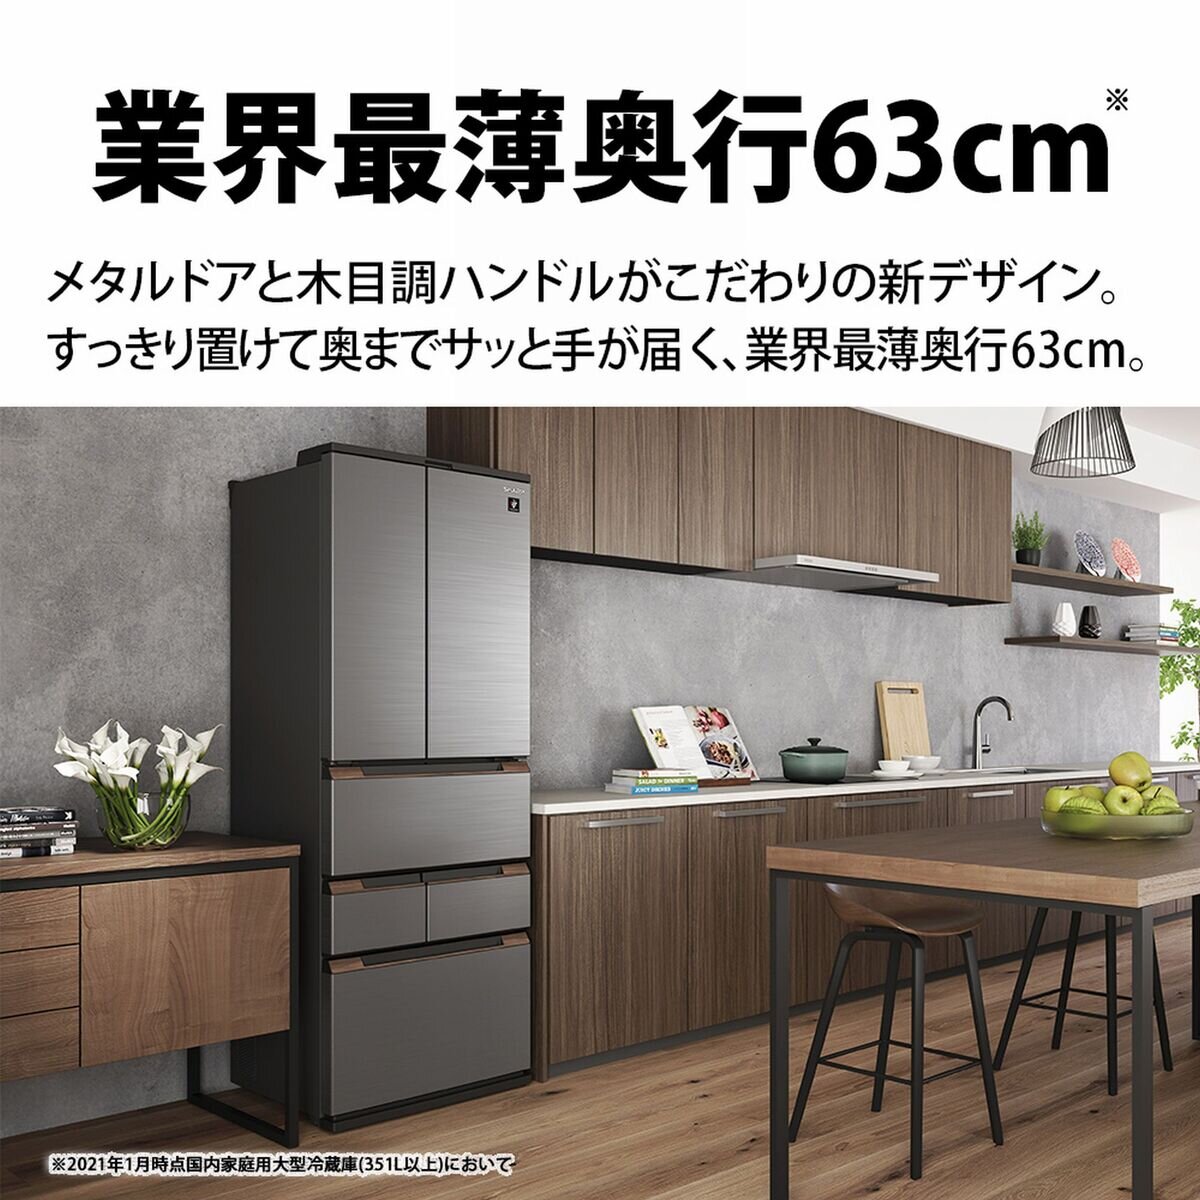 シャープ 460L 冷蔵庫 SJ-MF46H-H | Costco Japan